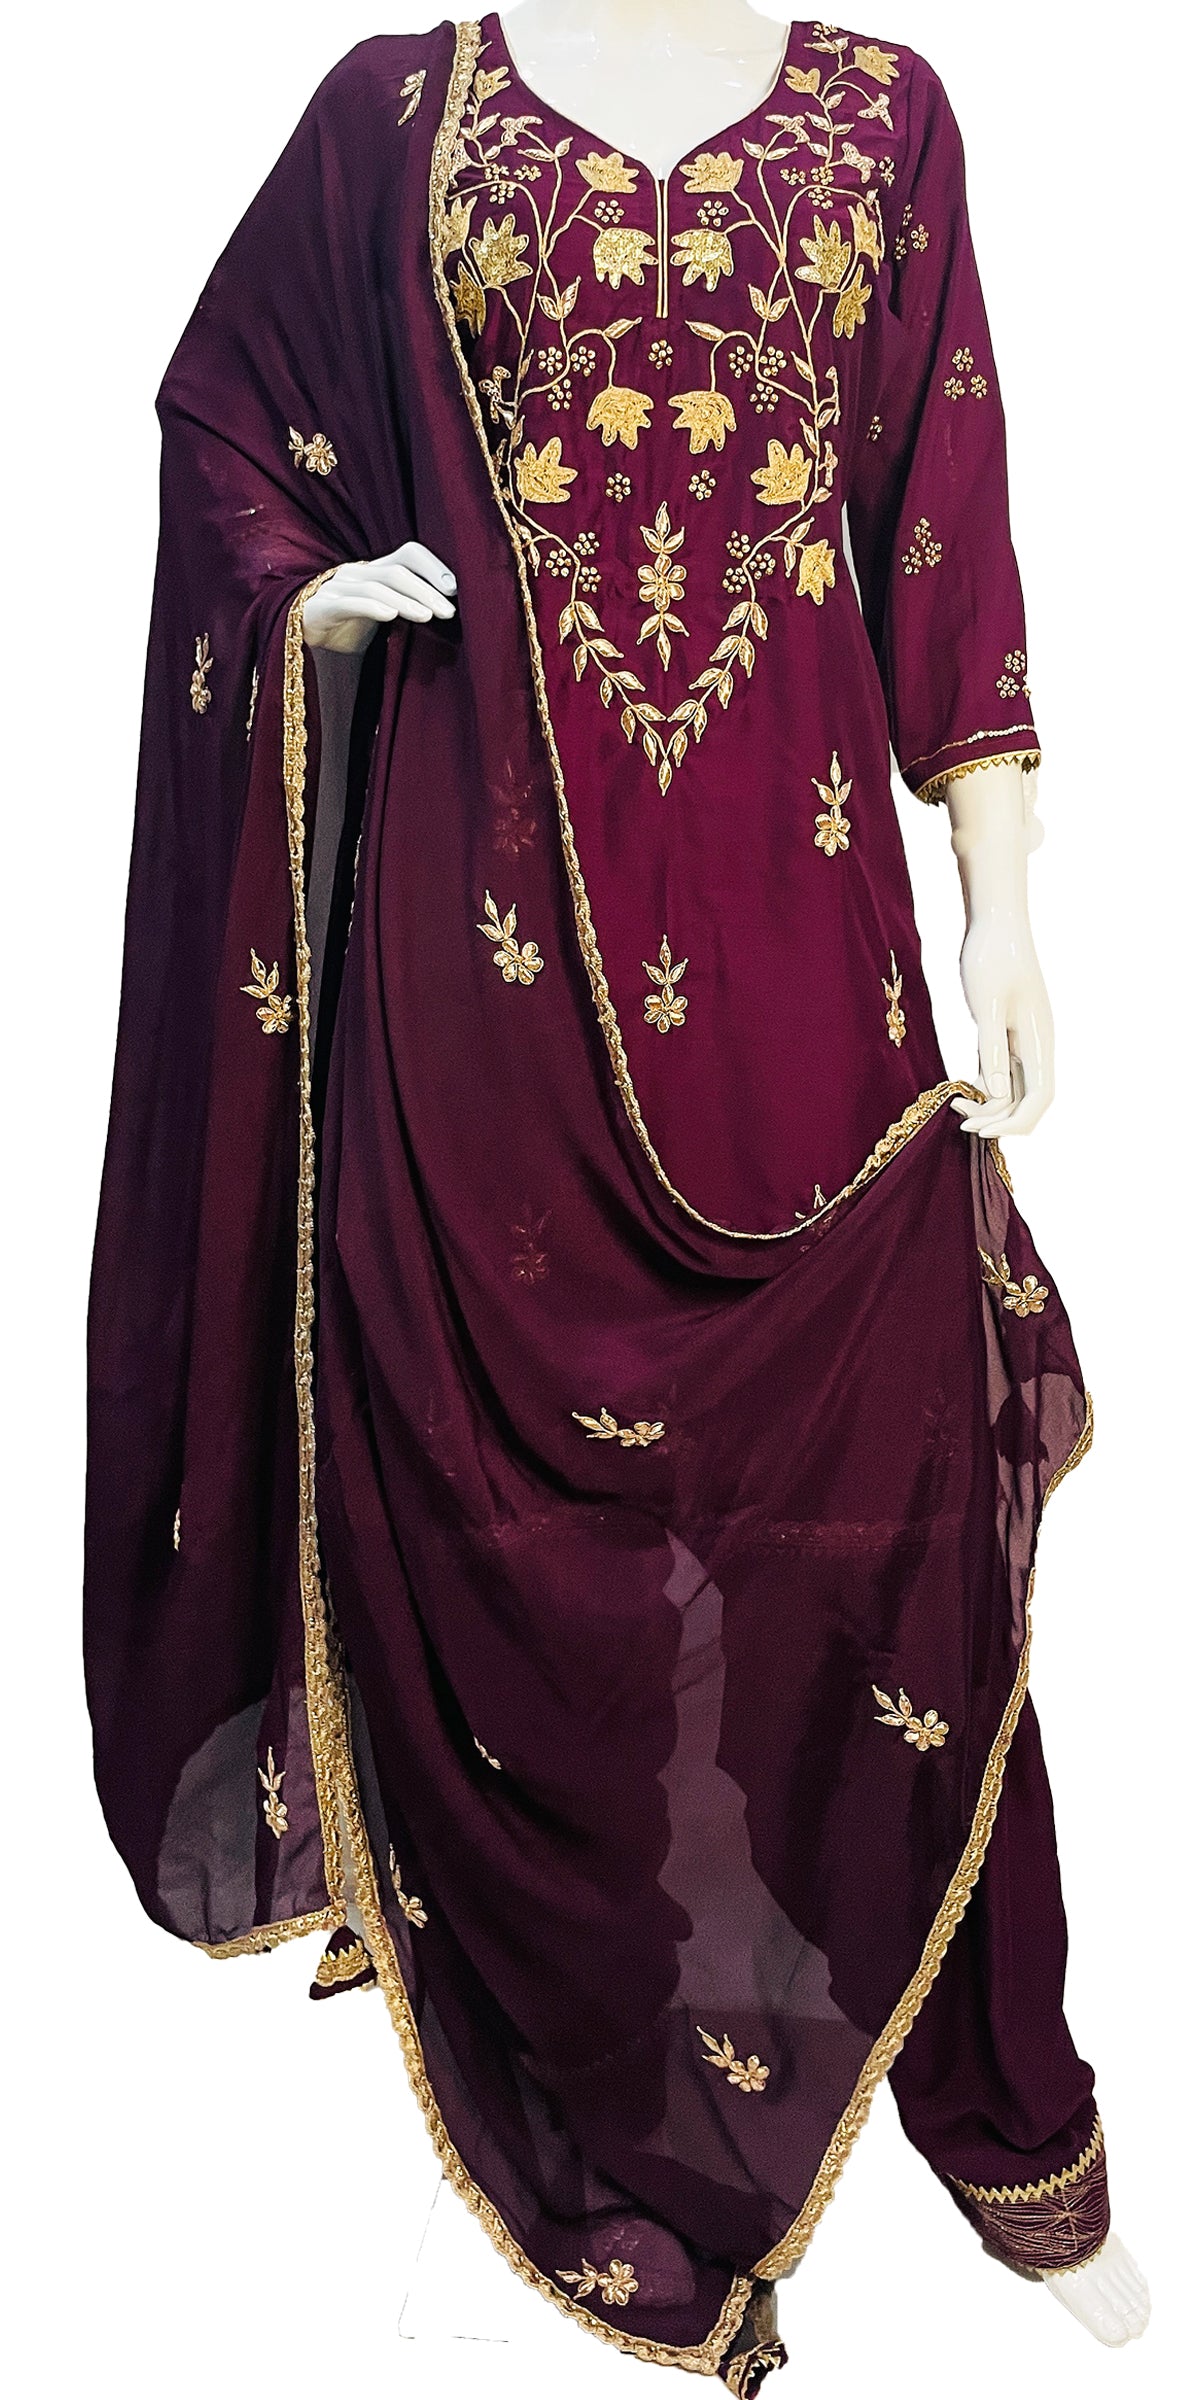 Wine color Salwar Suit, Hand Embroidered Punjabi suit, Custom made Salwar Kameez with Zari and Gota work, Party-wear salwar kameez with dupatta, Full Patiala Salwar Suit with Zari border